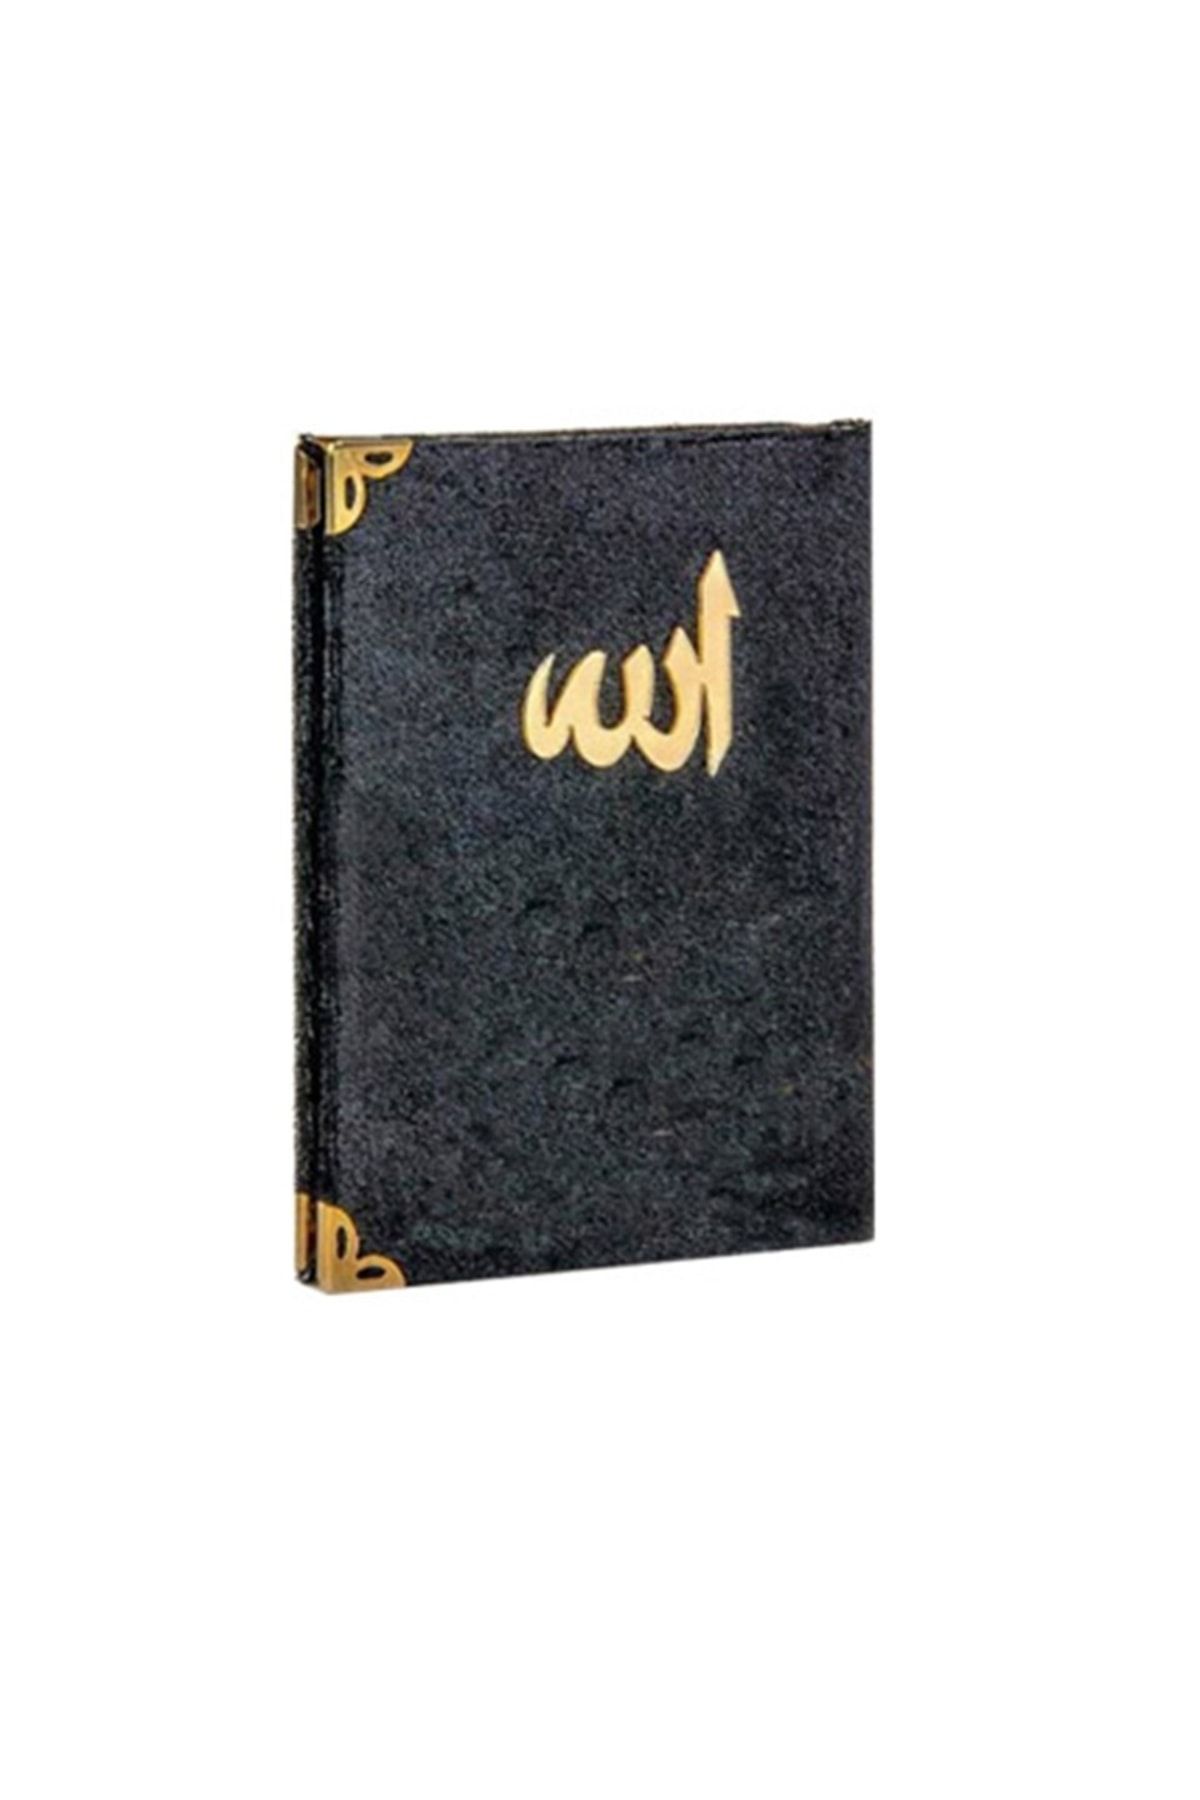 Cansüs 5li Kadife Kaplı Allah Yazılı Yasin Kitabı 7x10 Cm Siyah(paket Içeriği:5 Adet)